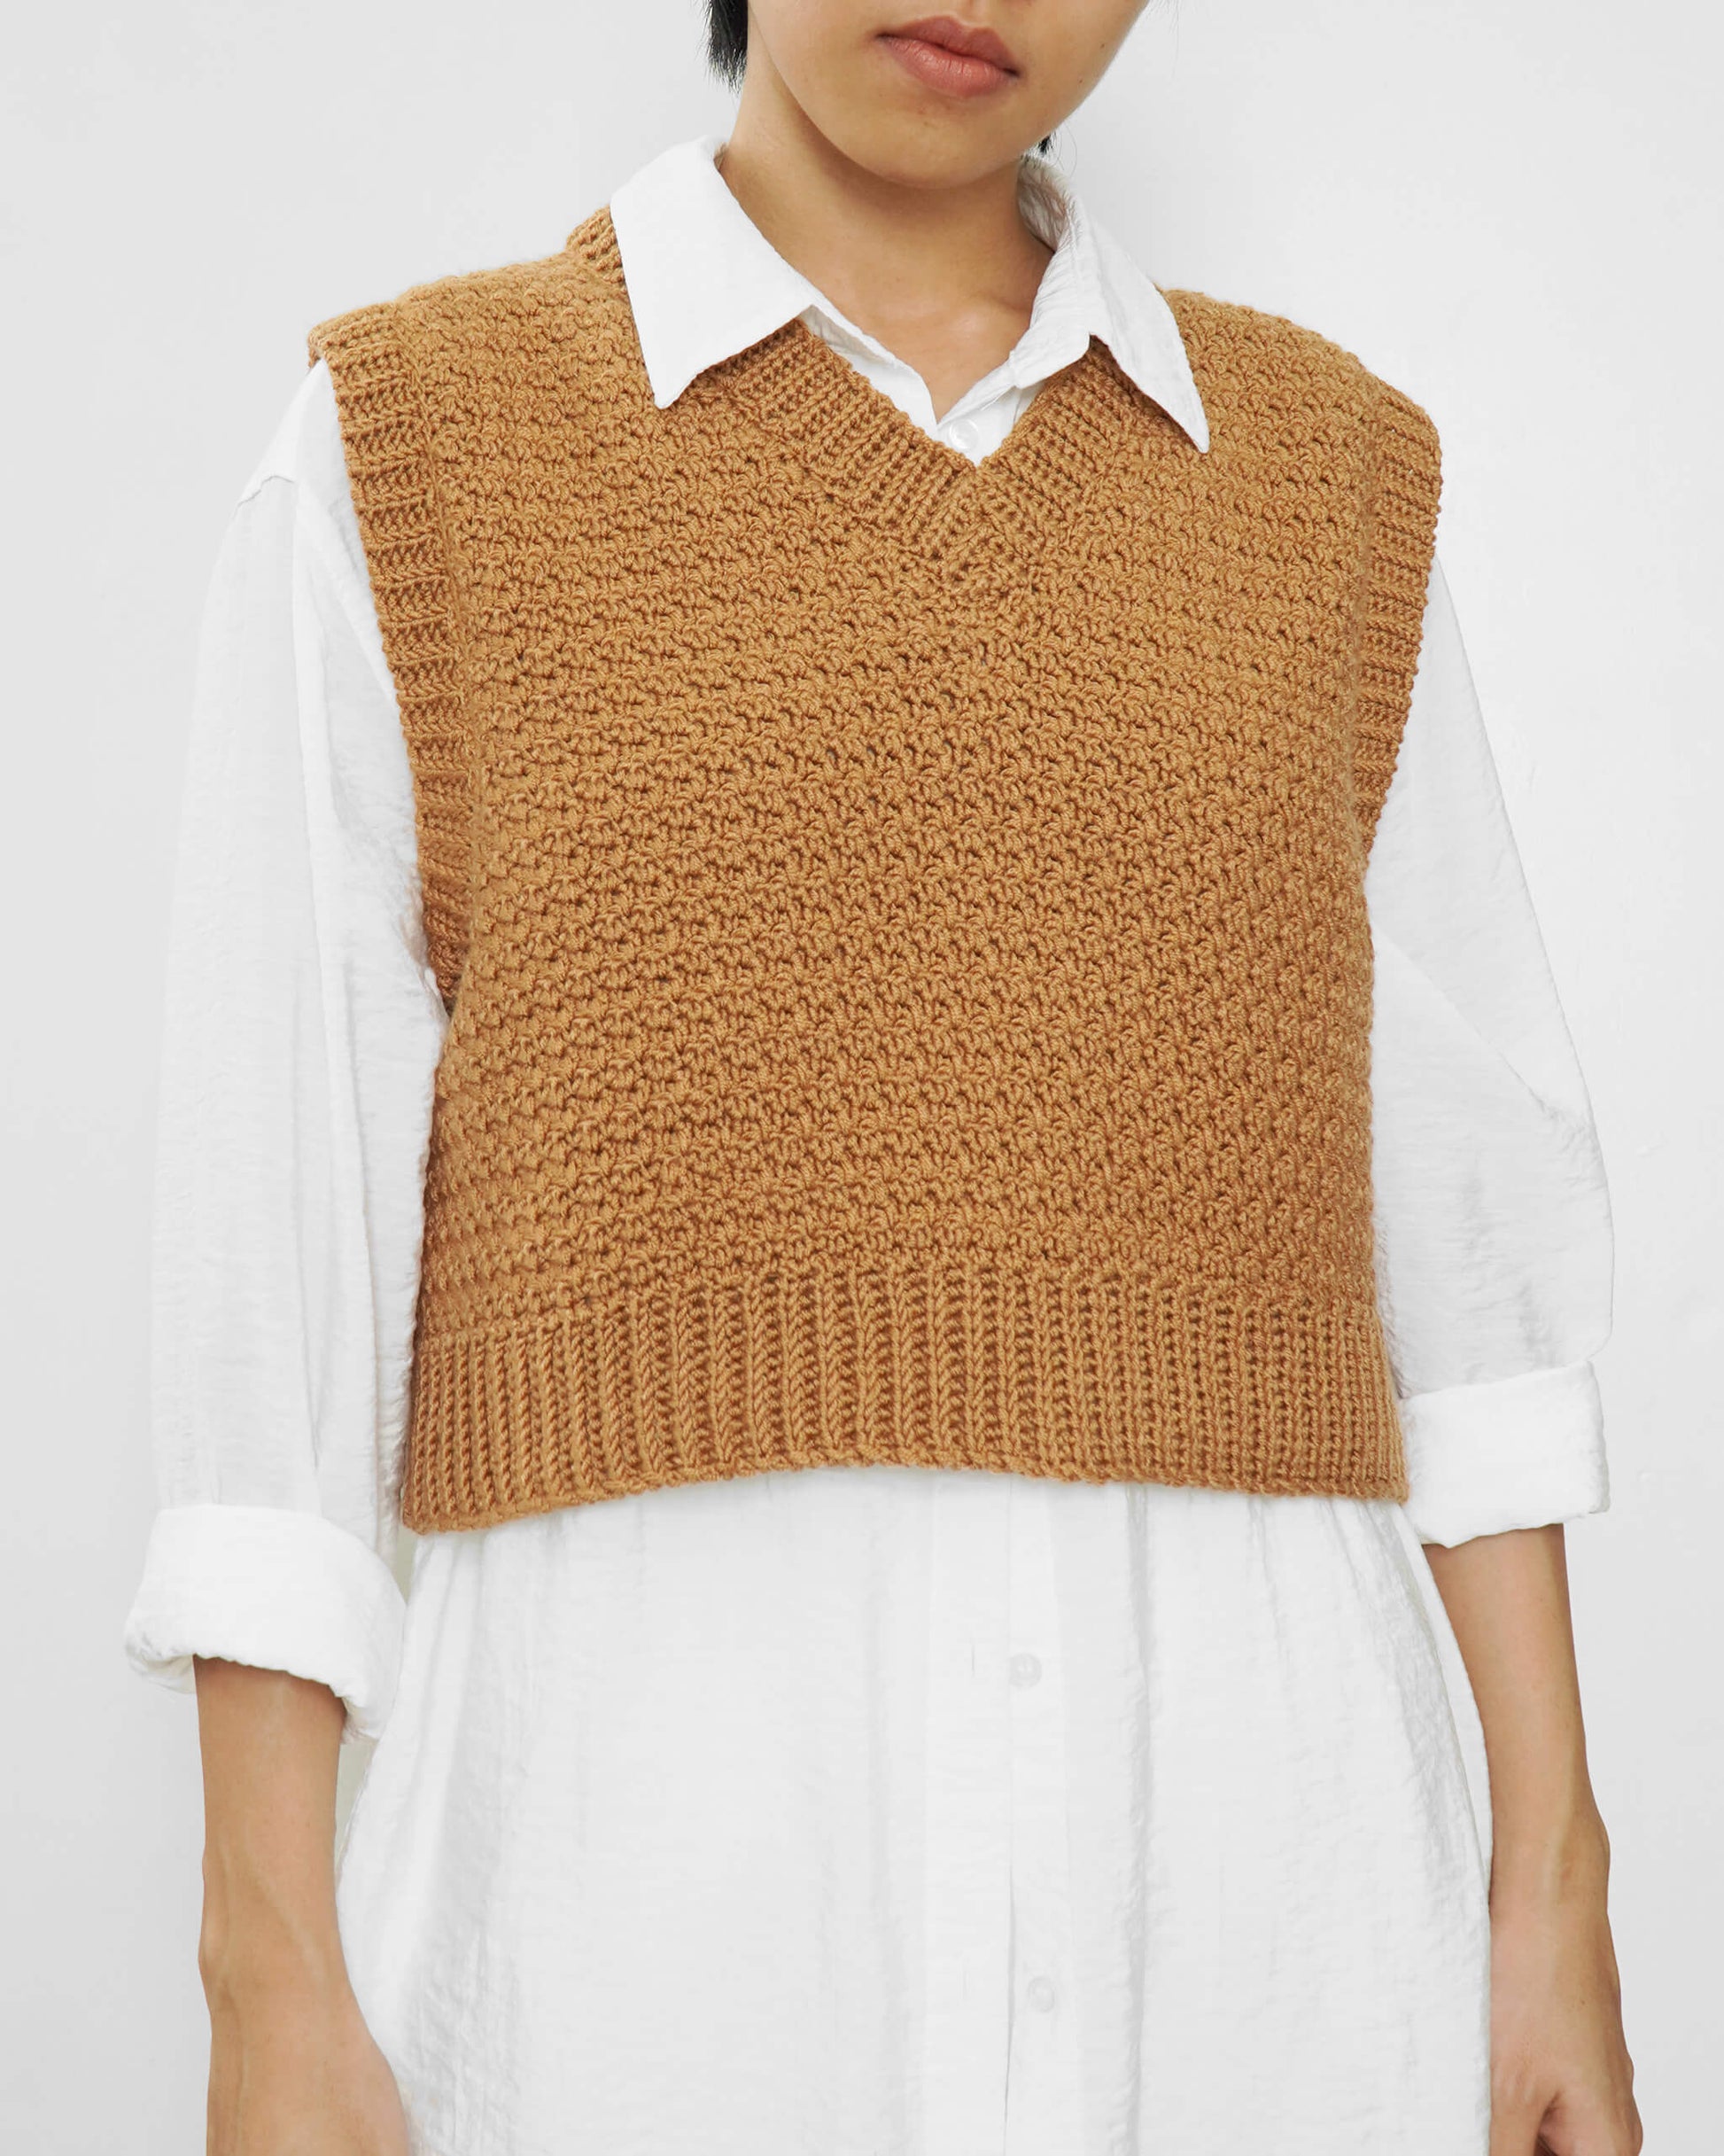 Easy crochet V-neck vest pattern